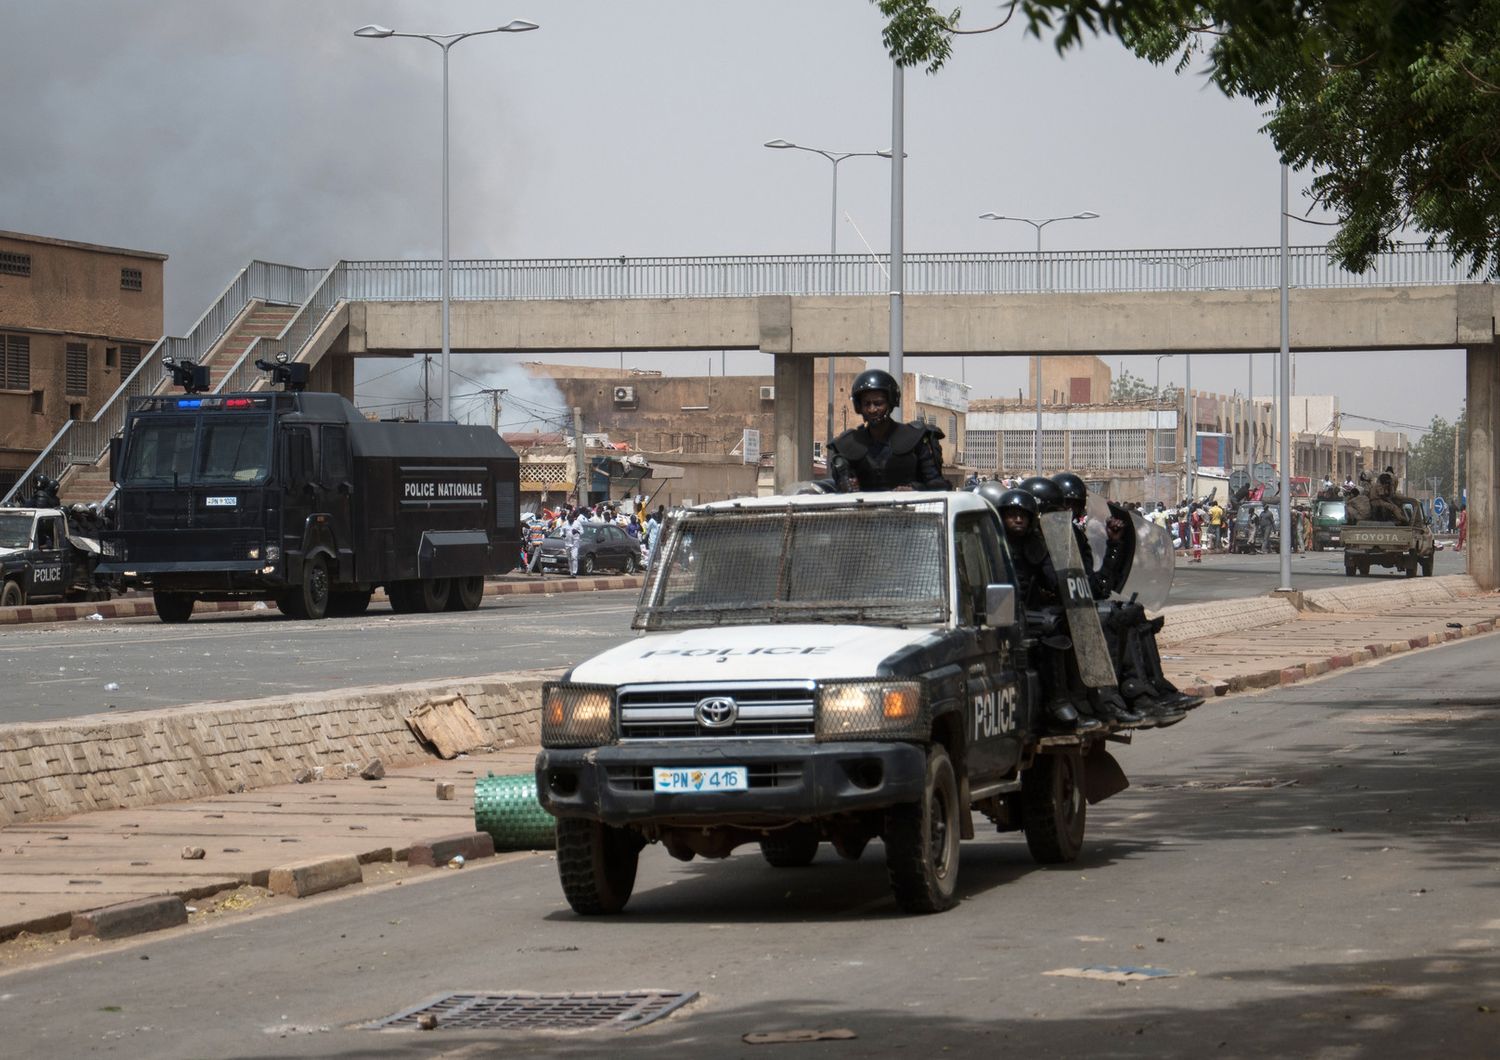 Un mezzo della polizia nelle strade di Niamey, in Mali